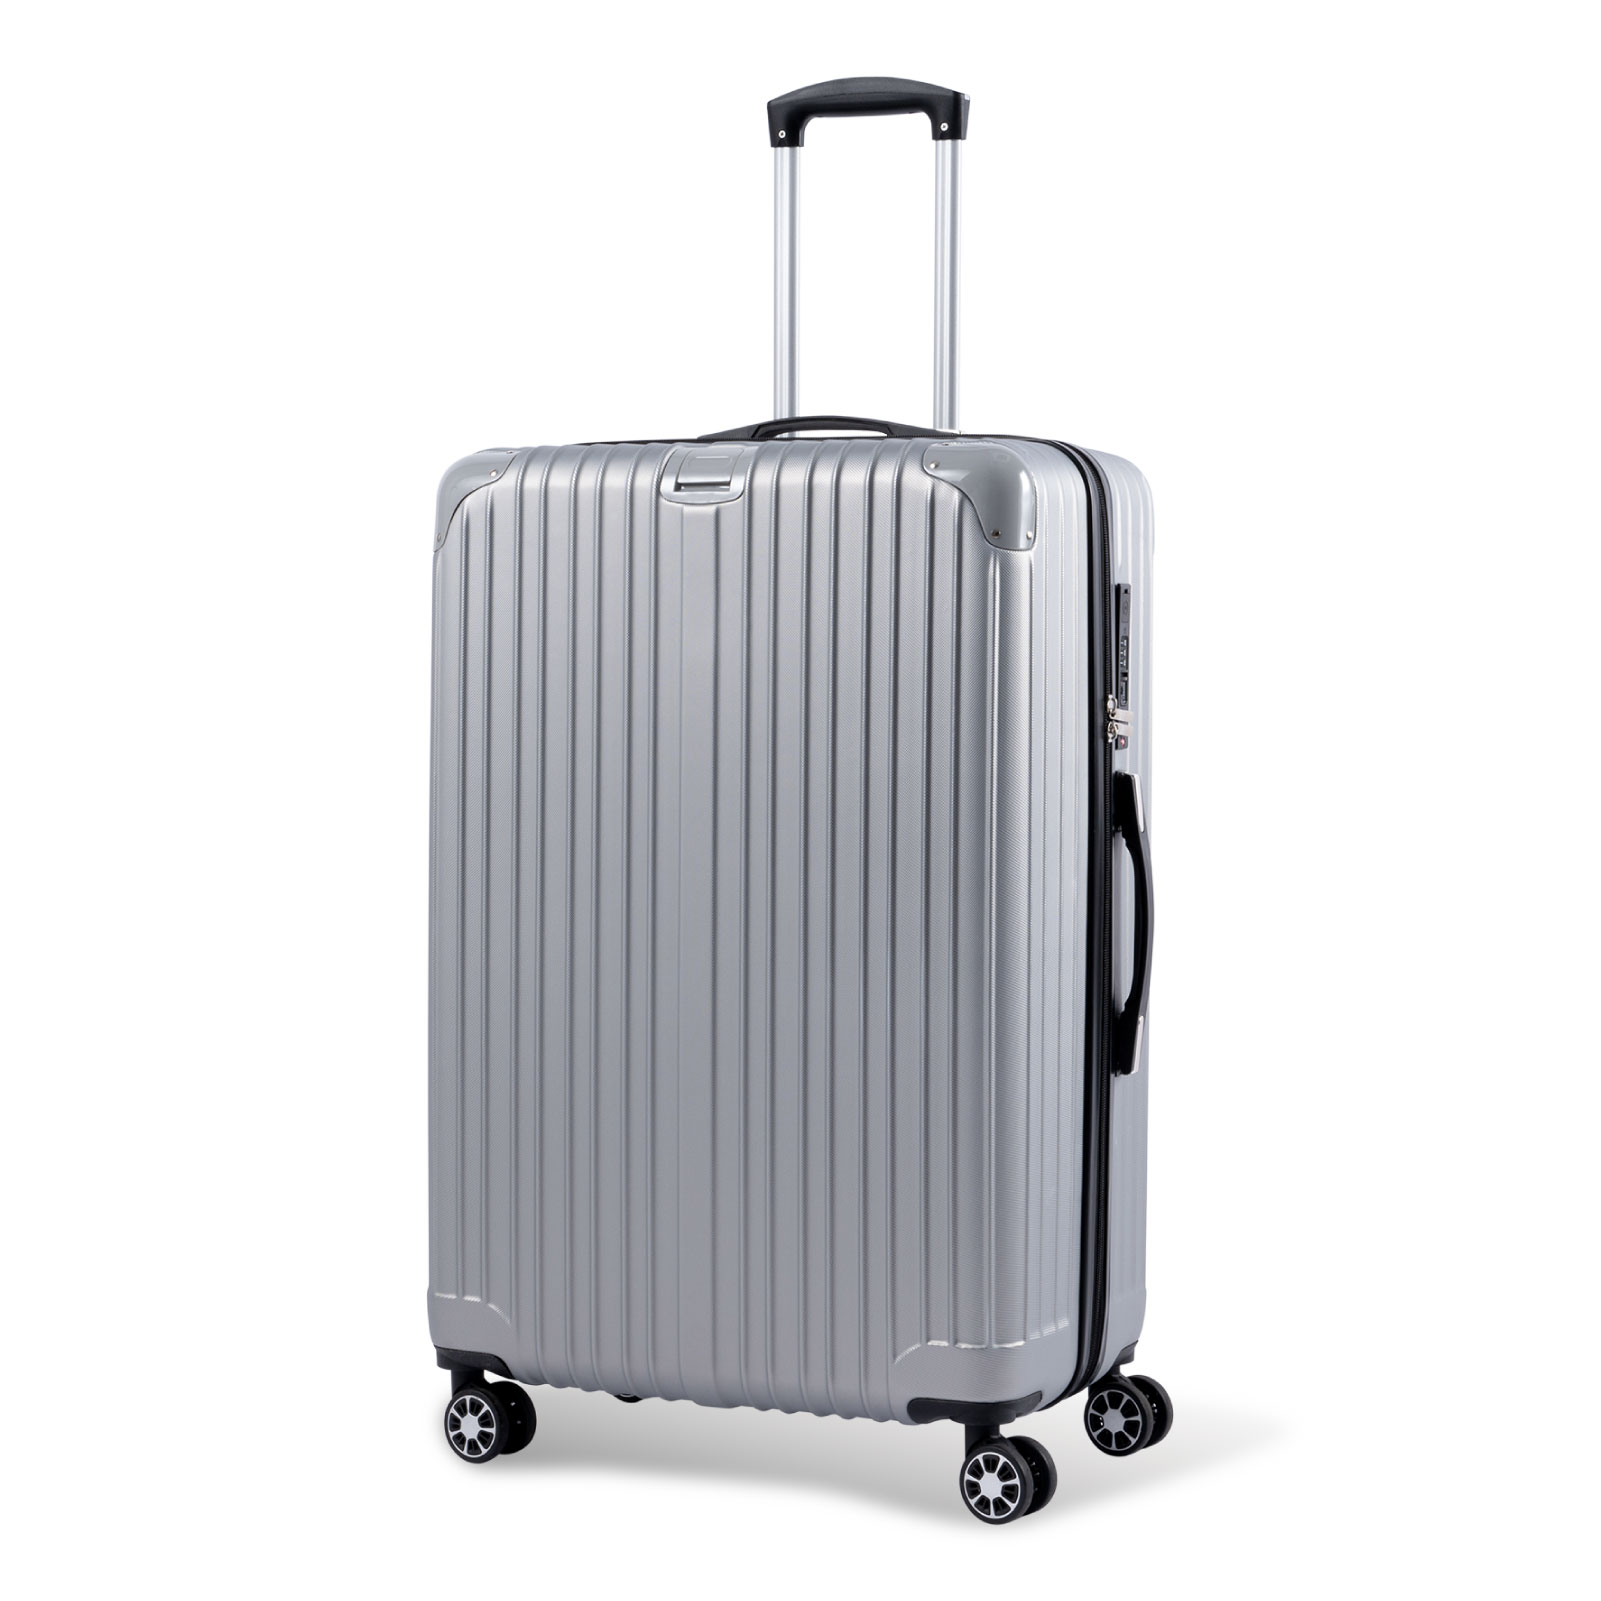 スーツケース USBポート付き キャリーケース Lサイズ キャリーバッグ 7カラー選ぶ 7-14日用 泊まる 軽量 360度回転 大容量 ファスナー式  ビジネス 出張 sc113-28